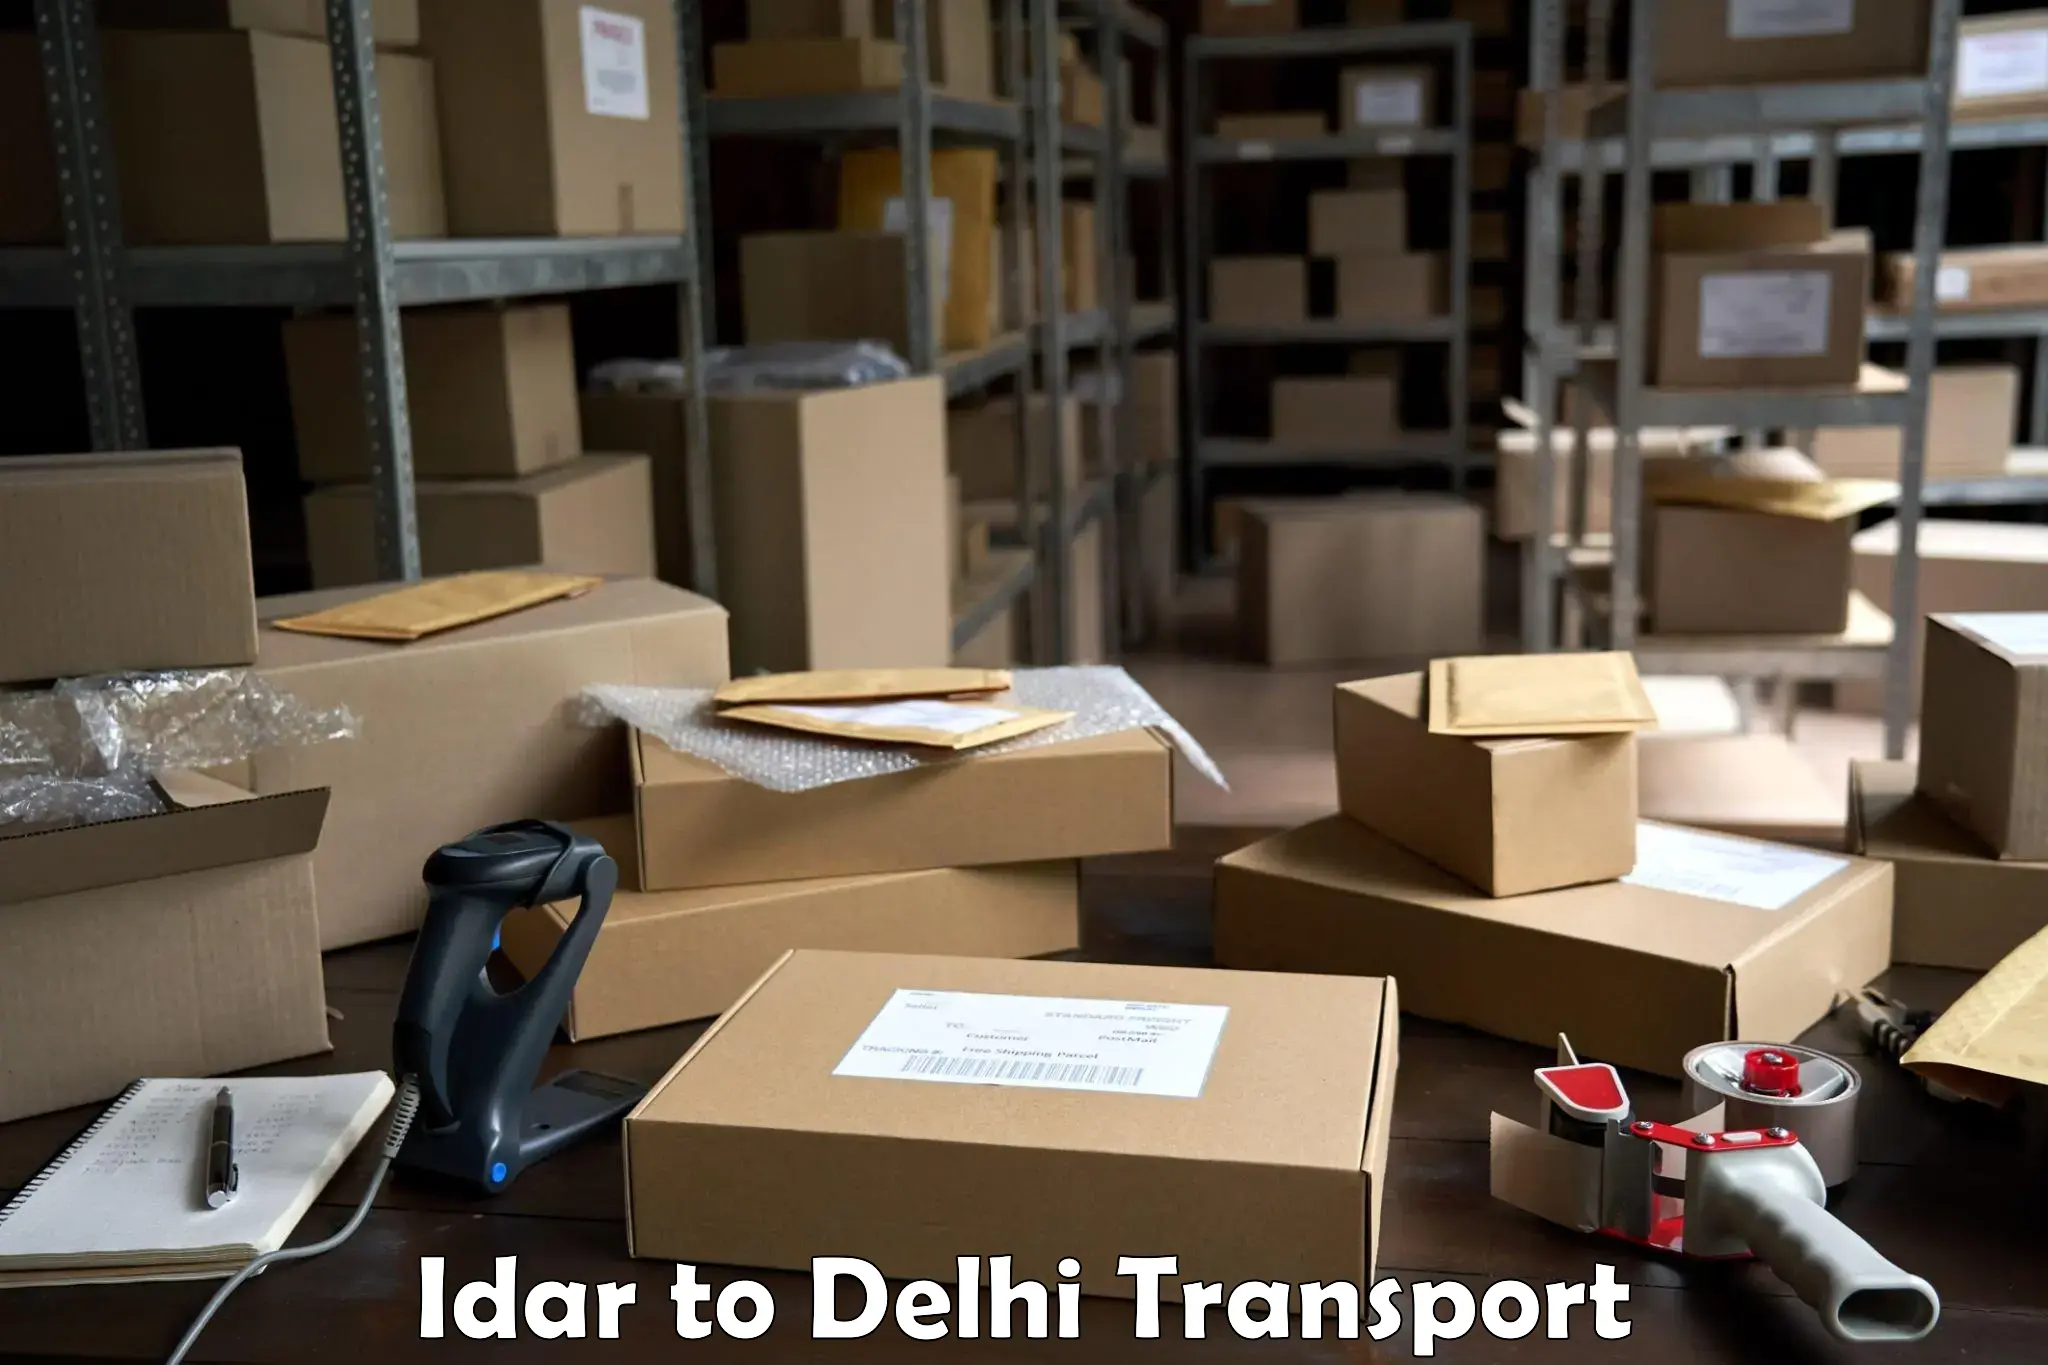 Domestic transport services Idar to IIT Delhi